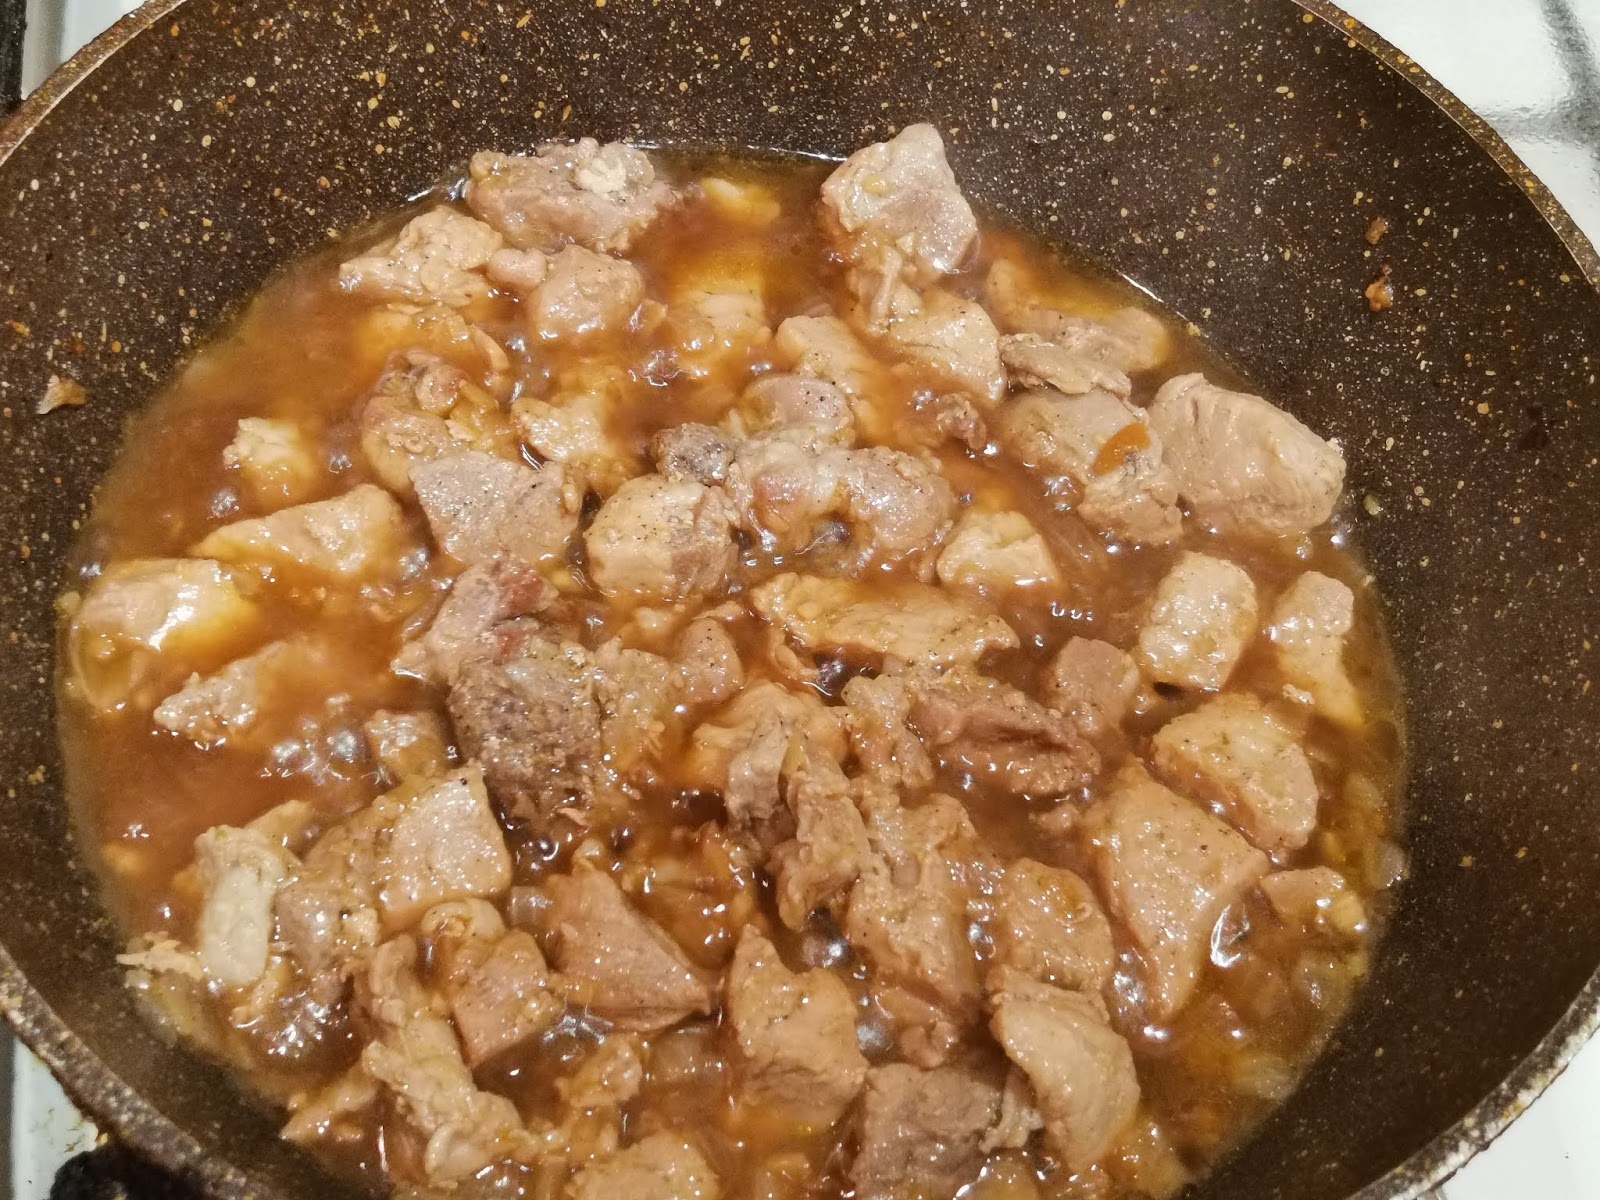 Вкусно приготовить свинину на сковороде кусочками сочную. Подлива из свинины. Вкусная свинина на сковороде кусочками с подливкой. Свинина кусочками на сковороде в соусе. Подлива из свинины на сковороде с мукой и томатной.